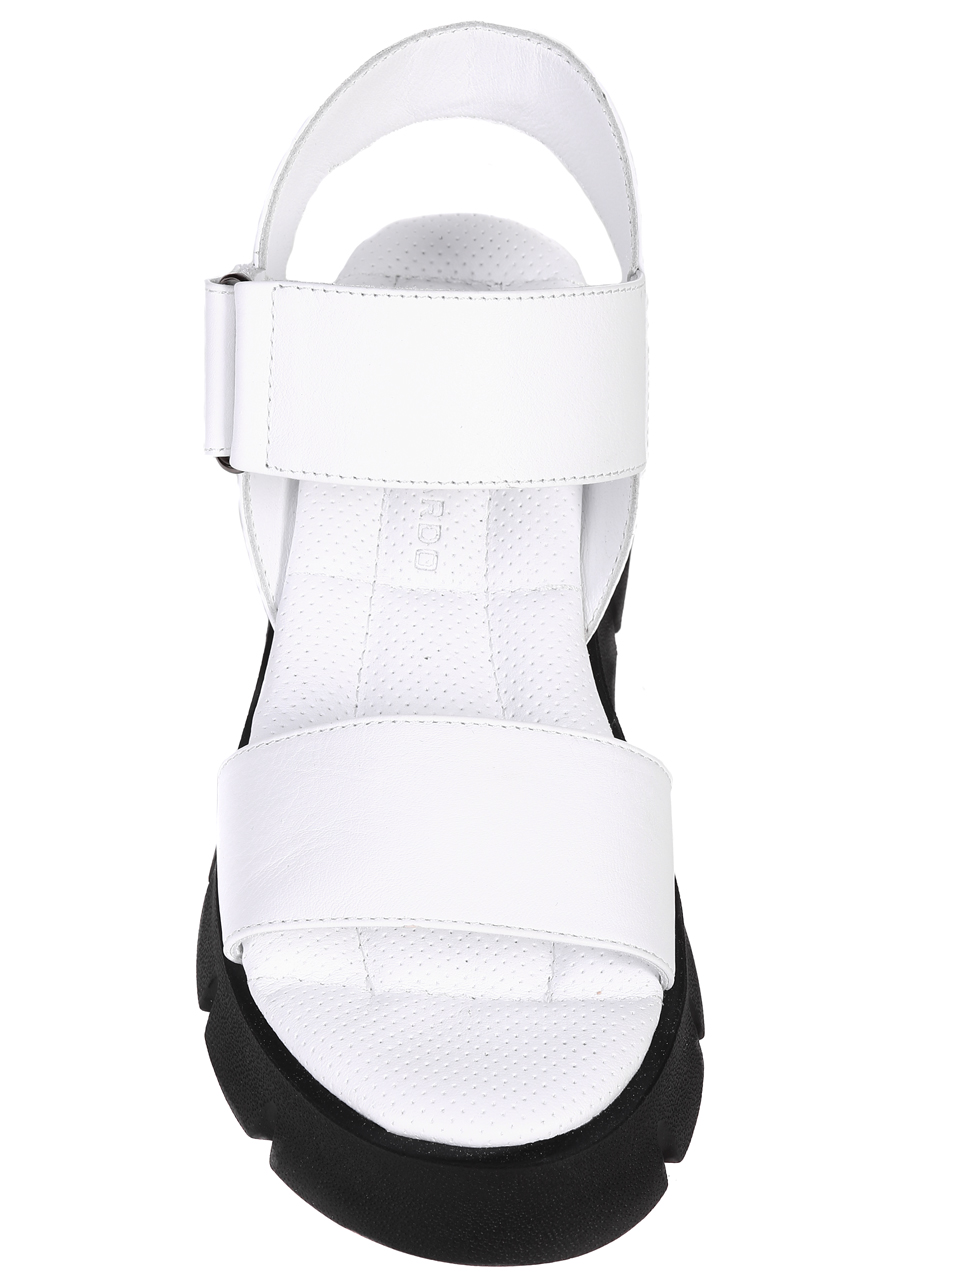 Ежедневни дамски комфортни сандали на платформа от естествена кожа 4AT-23327 white (22345)